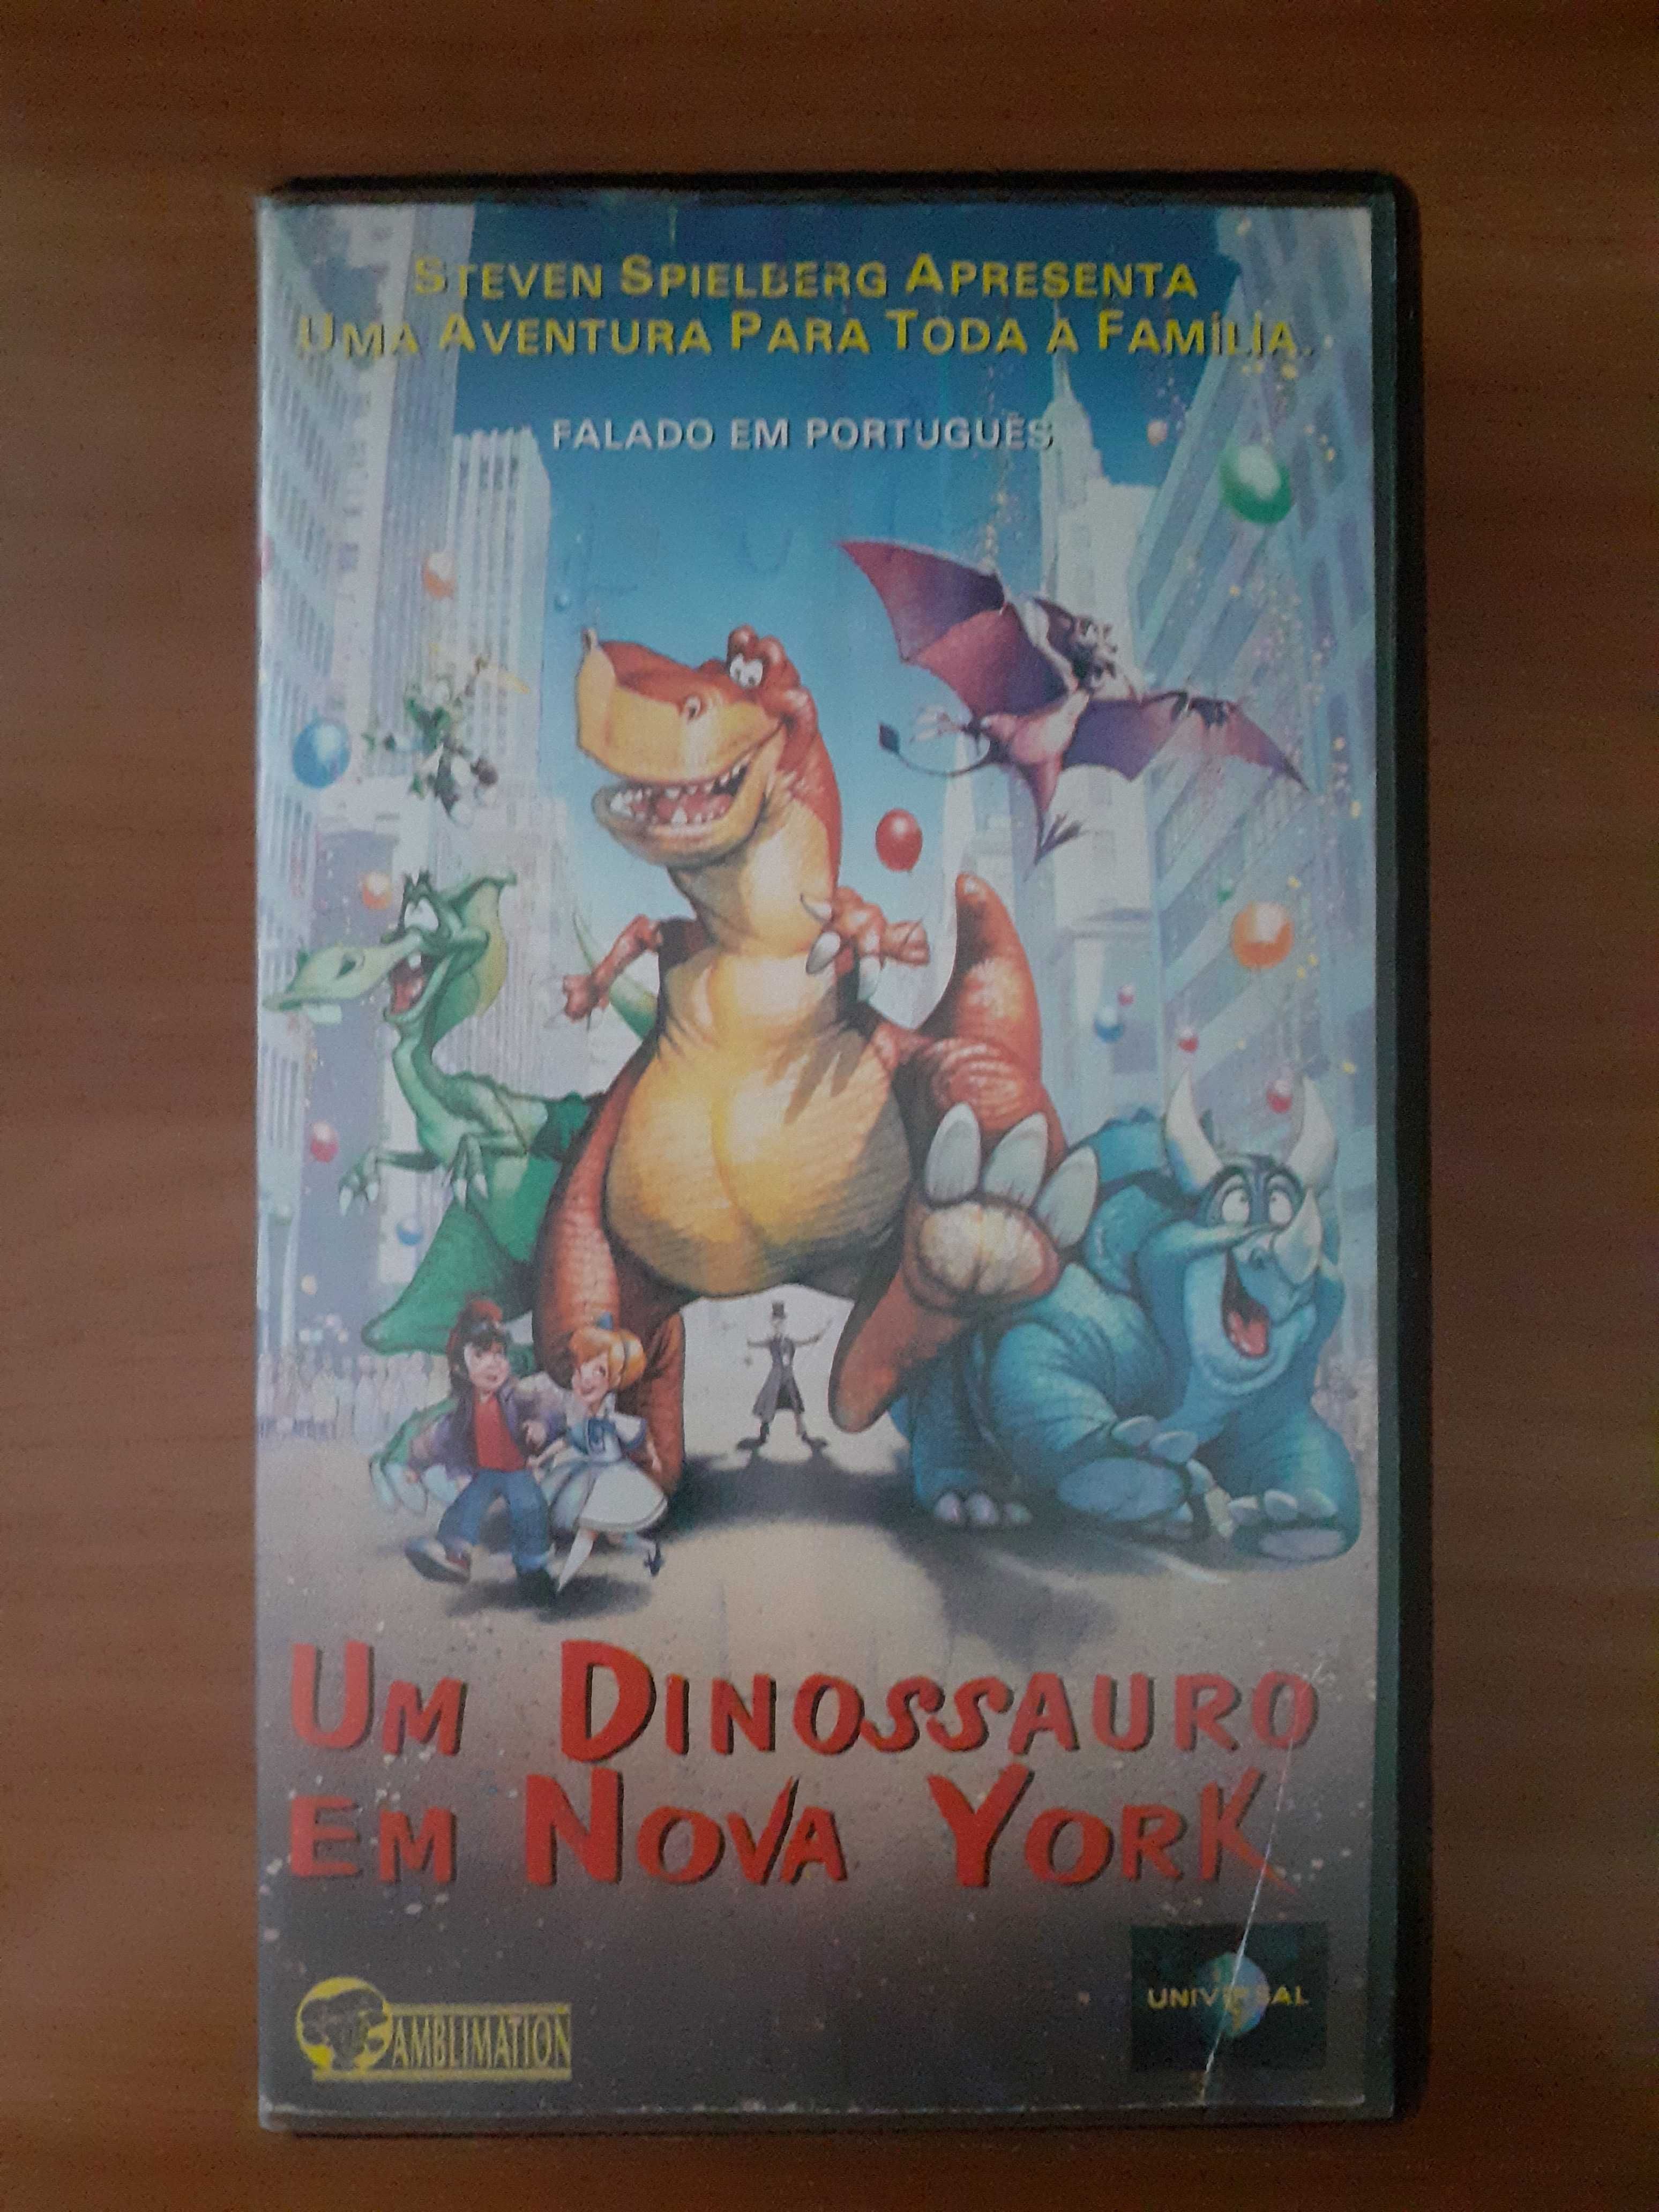 VHS: "Um Dinossauro em Nova York" (Steven Spielberg)